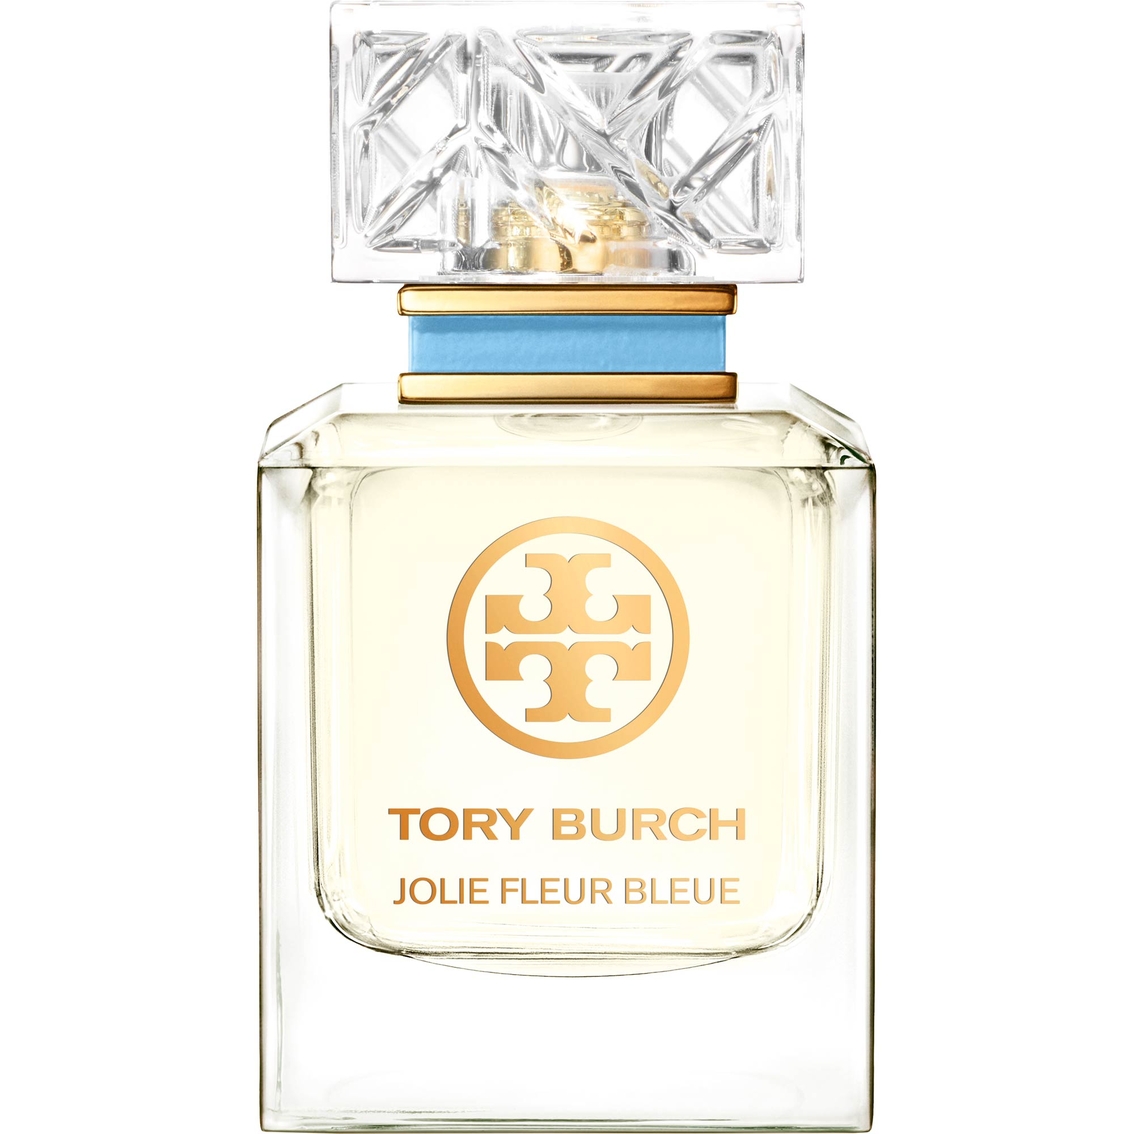 Tory Burch Jolie Fleur Bleue Eau De Parfum Spray | Women's Fragrances ...